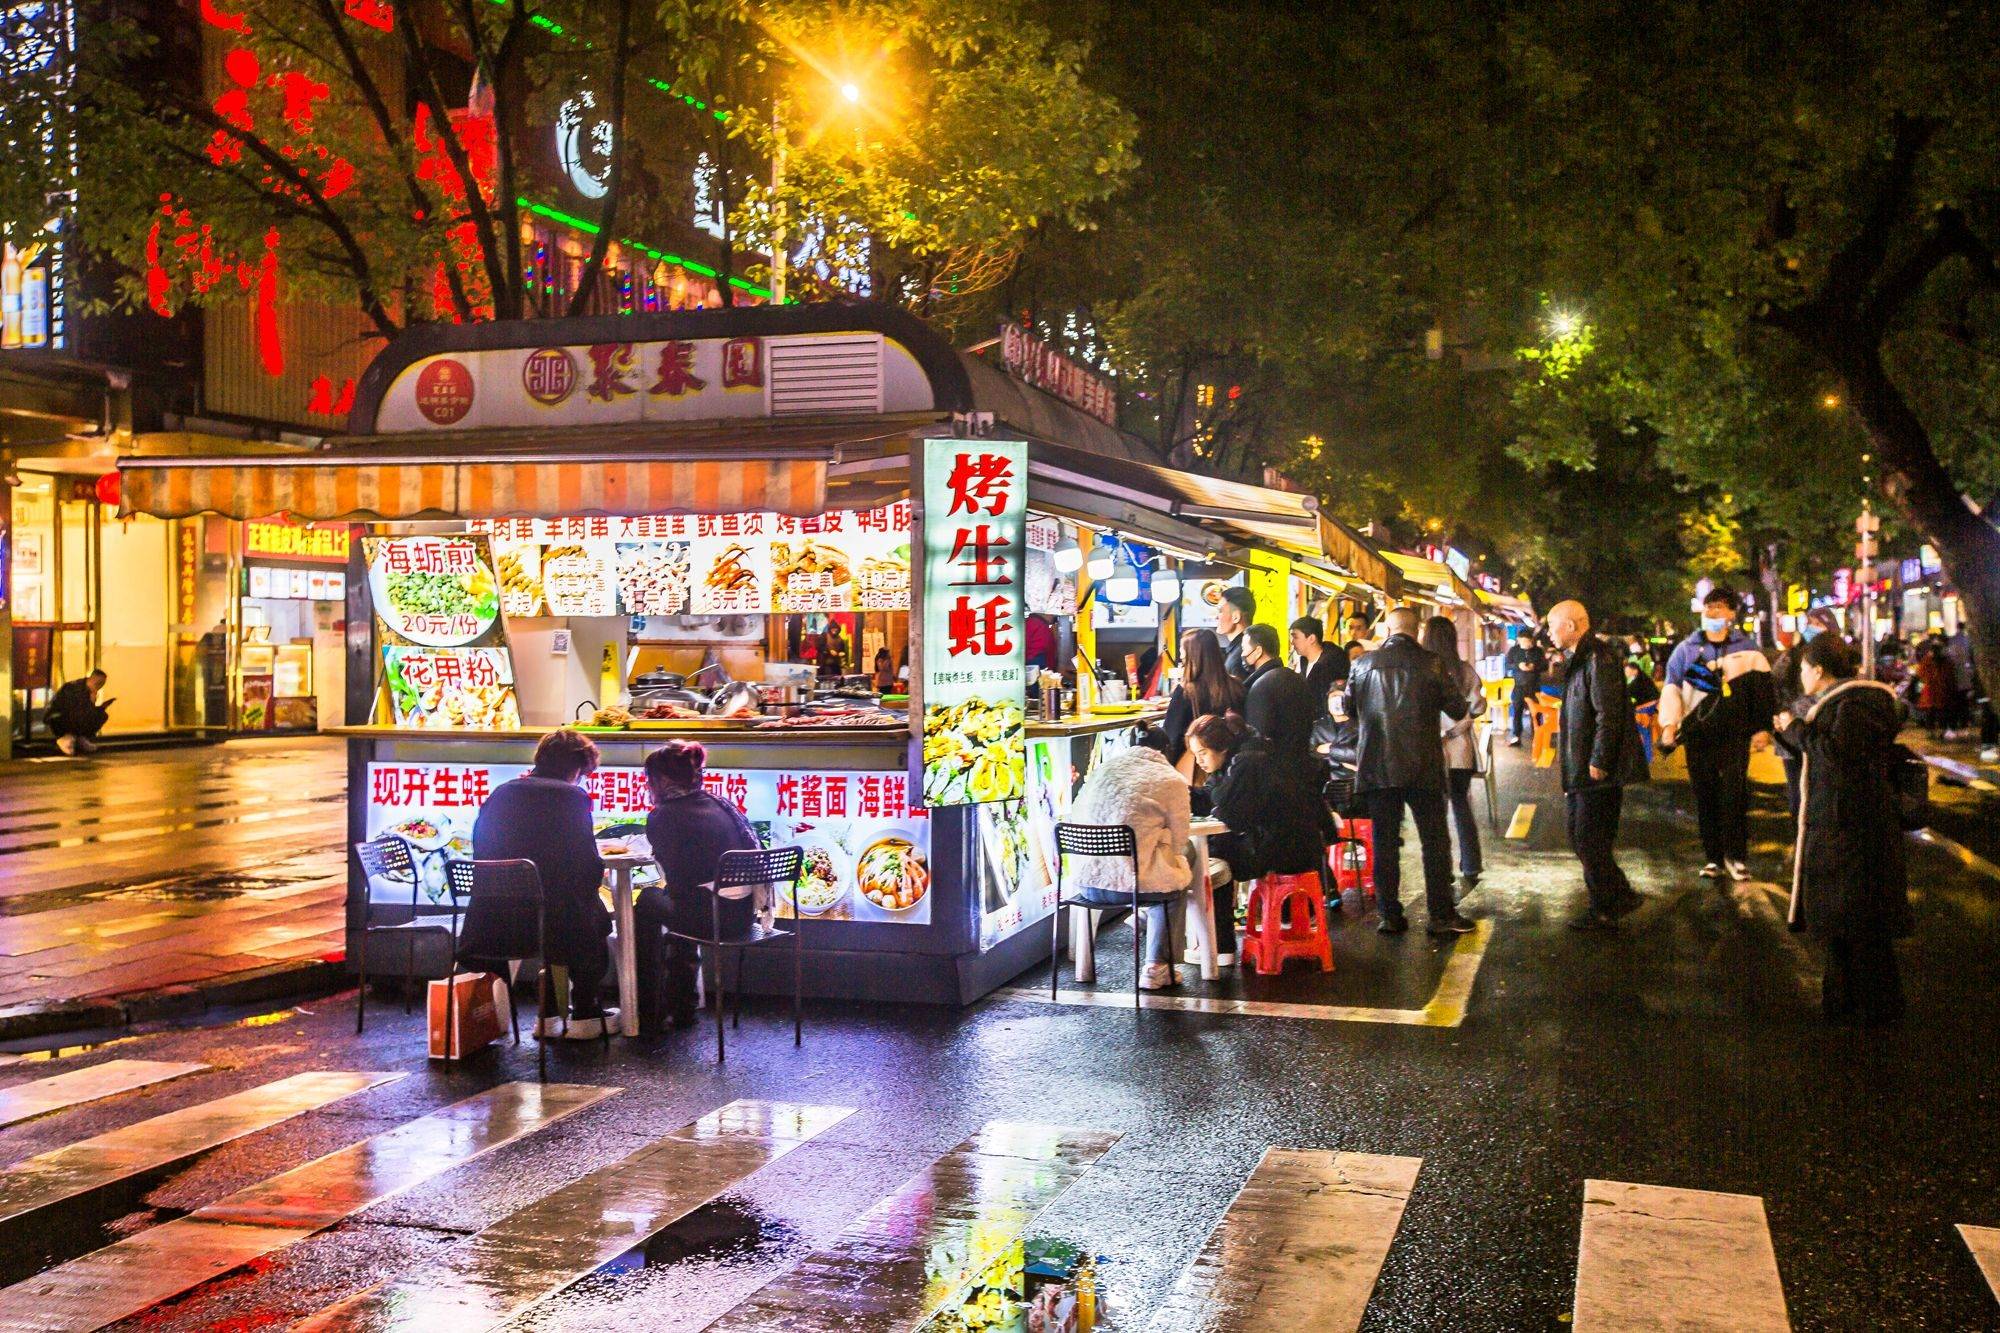 福州达明美食街,拥有众多特色美食,被誉为福州的"士林夜市"_小吃_餐车